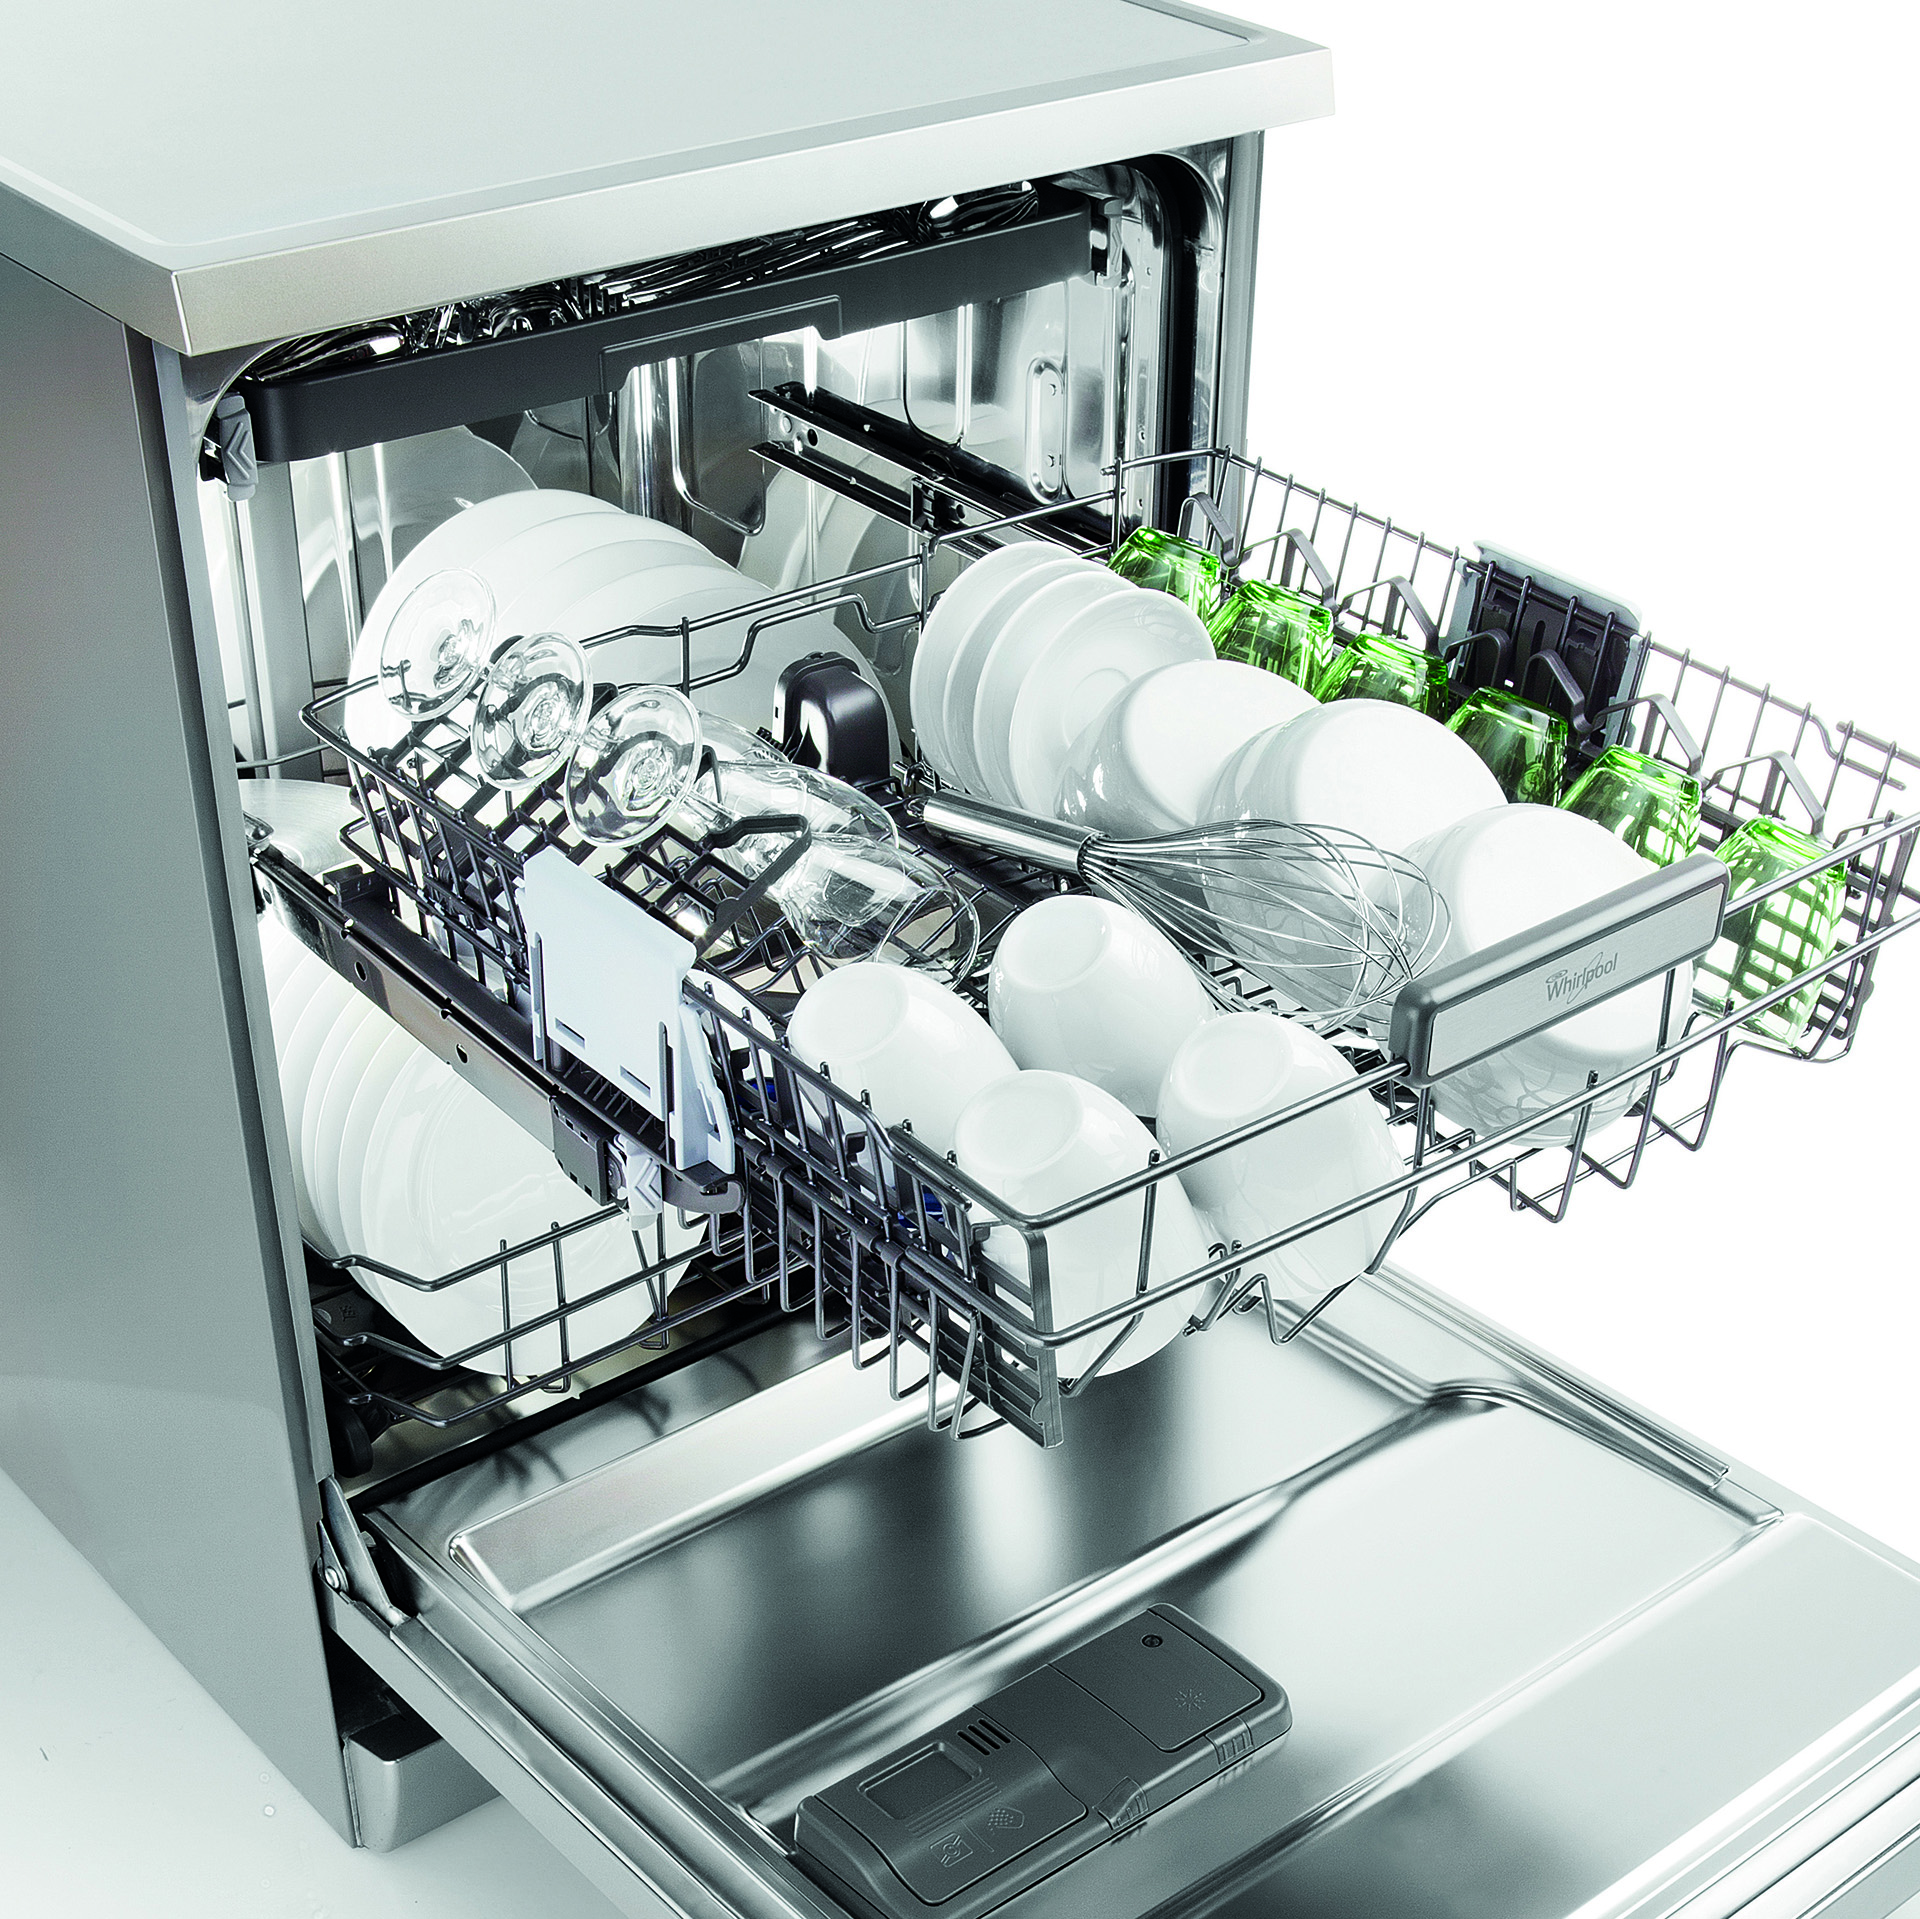 Посудомоечные машины 3 комплекта. Ginzzu dc281. Whirlpool 6 sense посудомоечная машина. Посудомоечная машина Ginzzu dc281. Посудомоечная машина Whirlpool Aquasteam 6.